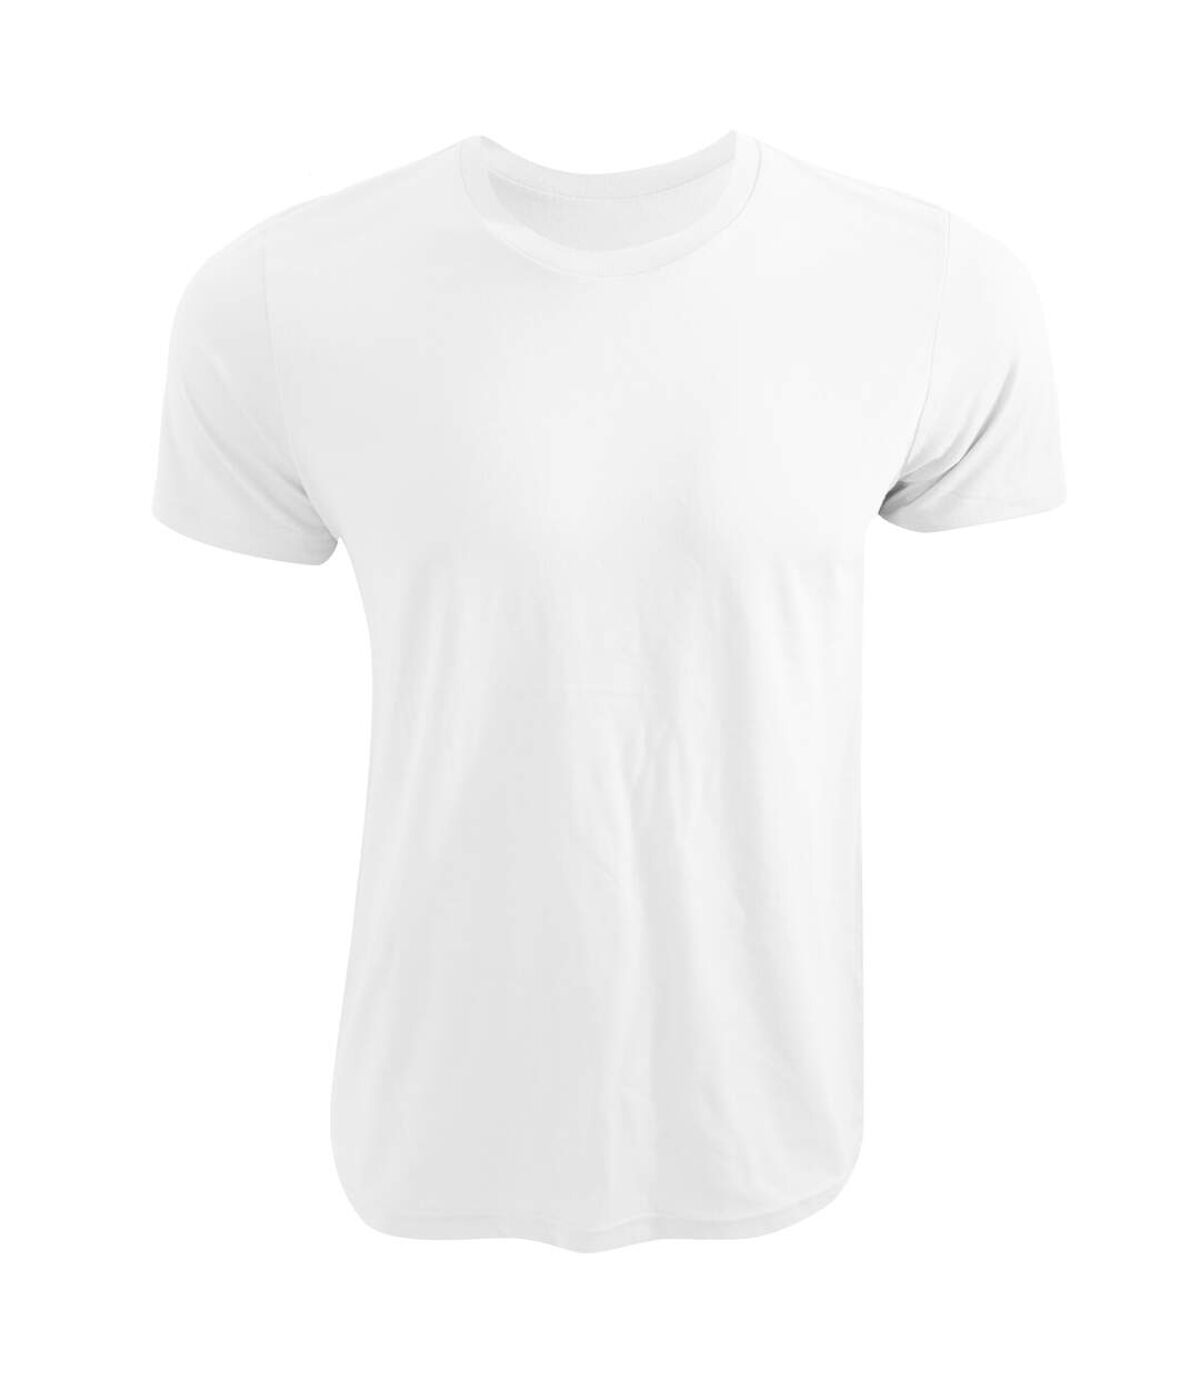 Canvas - T-shirt à manches courtes - Adulte unisexe (Blanc) - UTBC3167